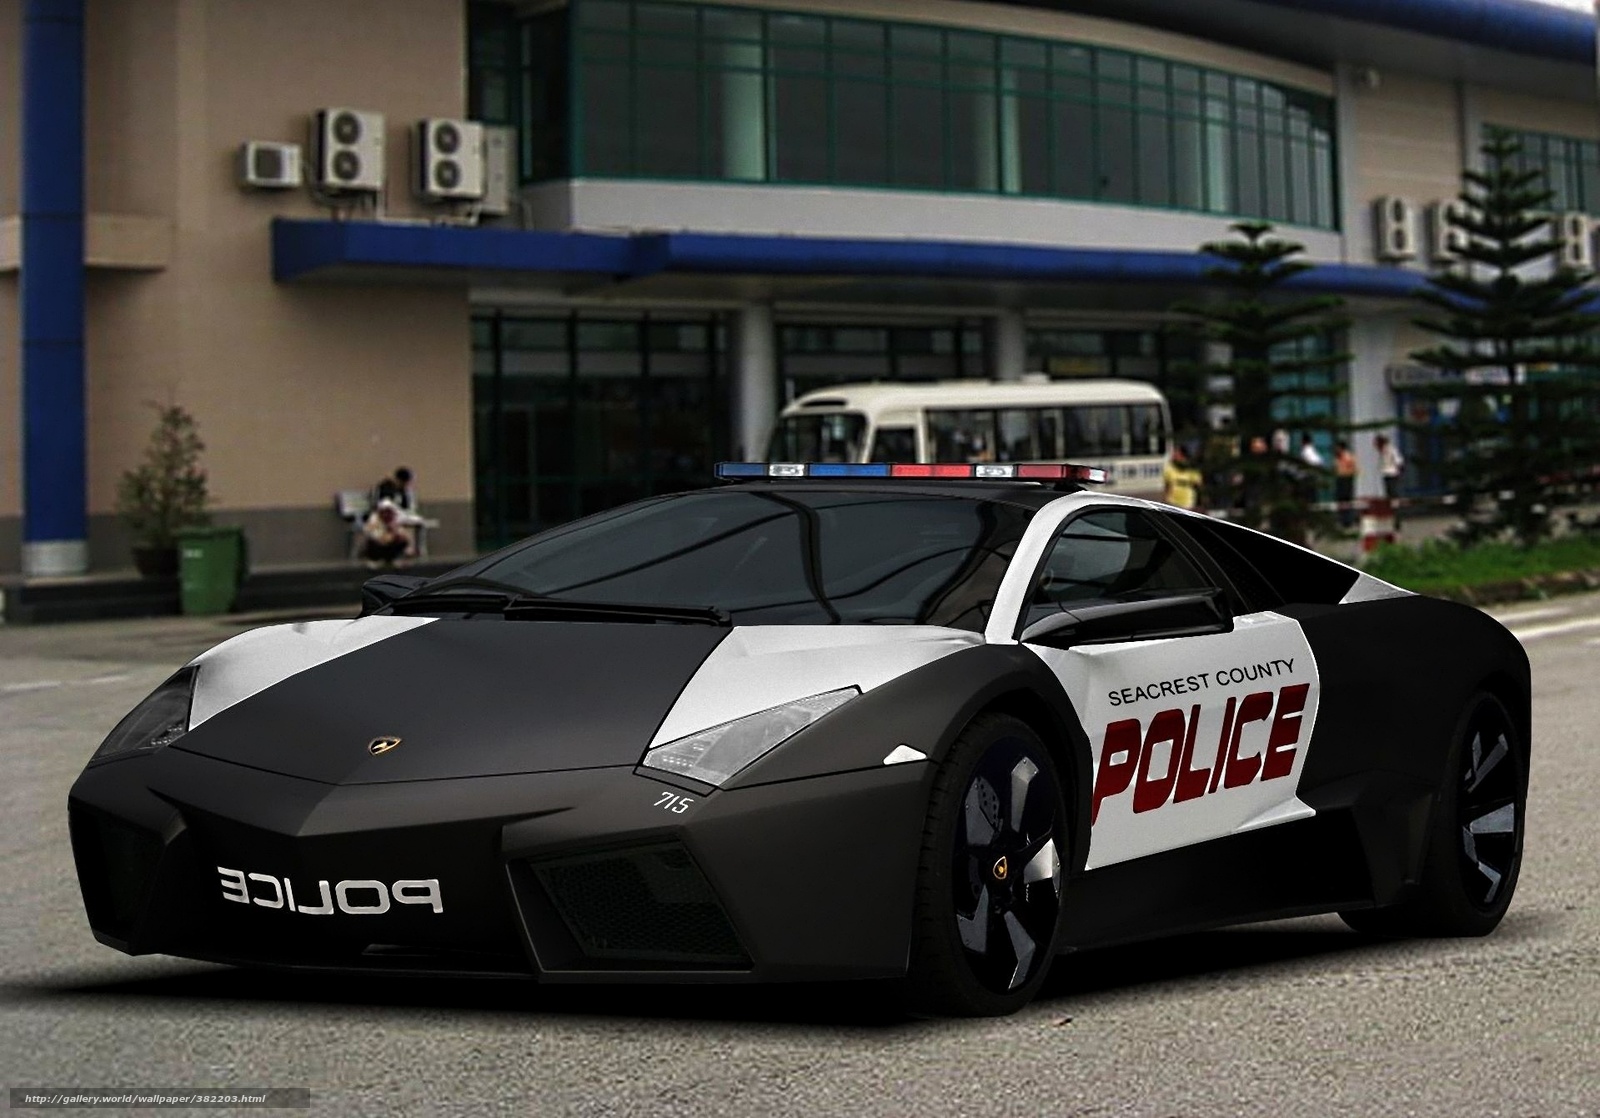 Download Wallpaper Car, Police, Lamborghini, Cars Free - Alpharetta Lamborghini Police Car - HD Wallpaper 